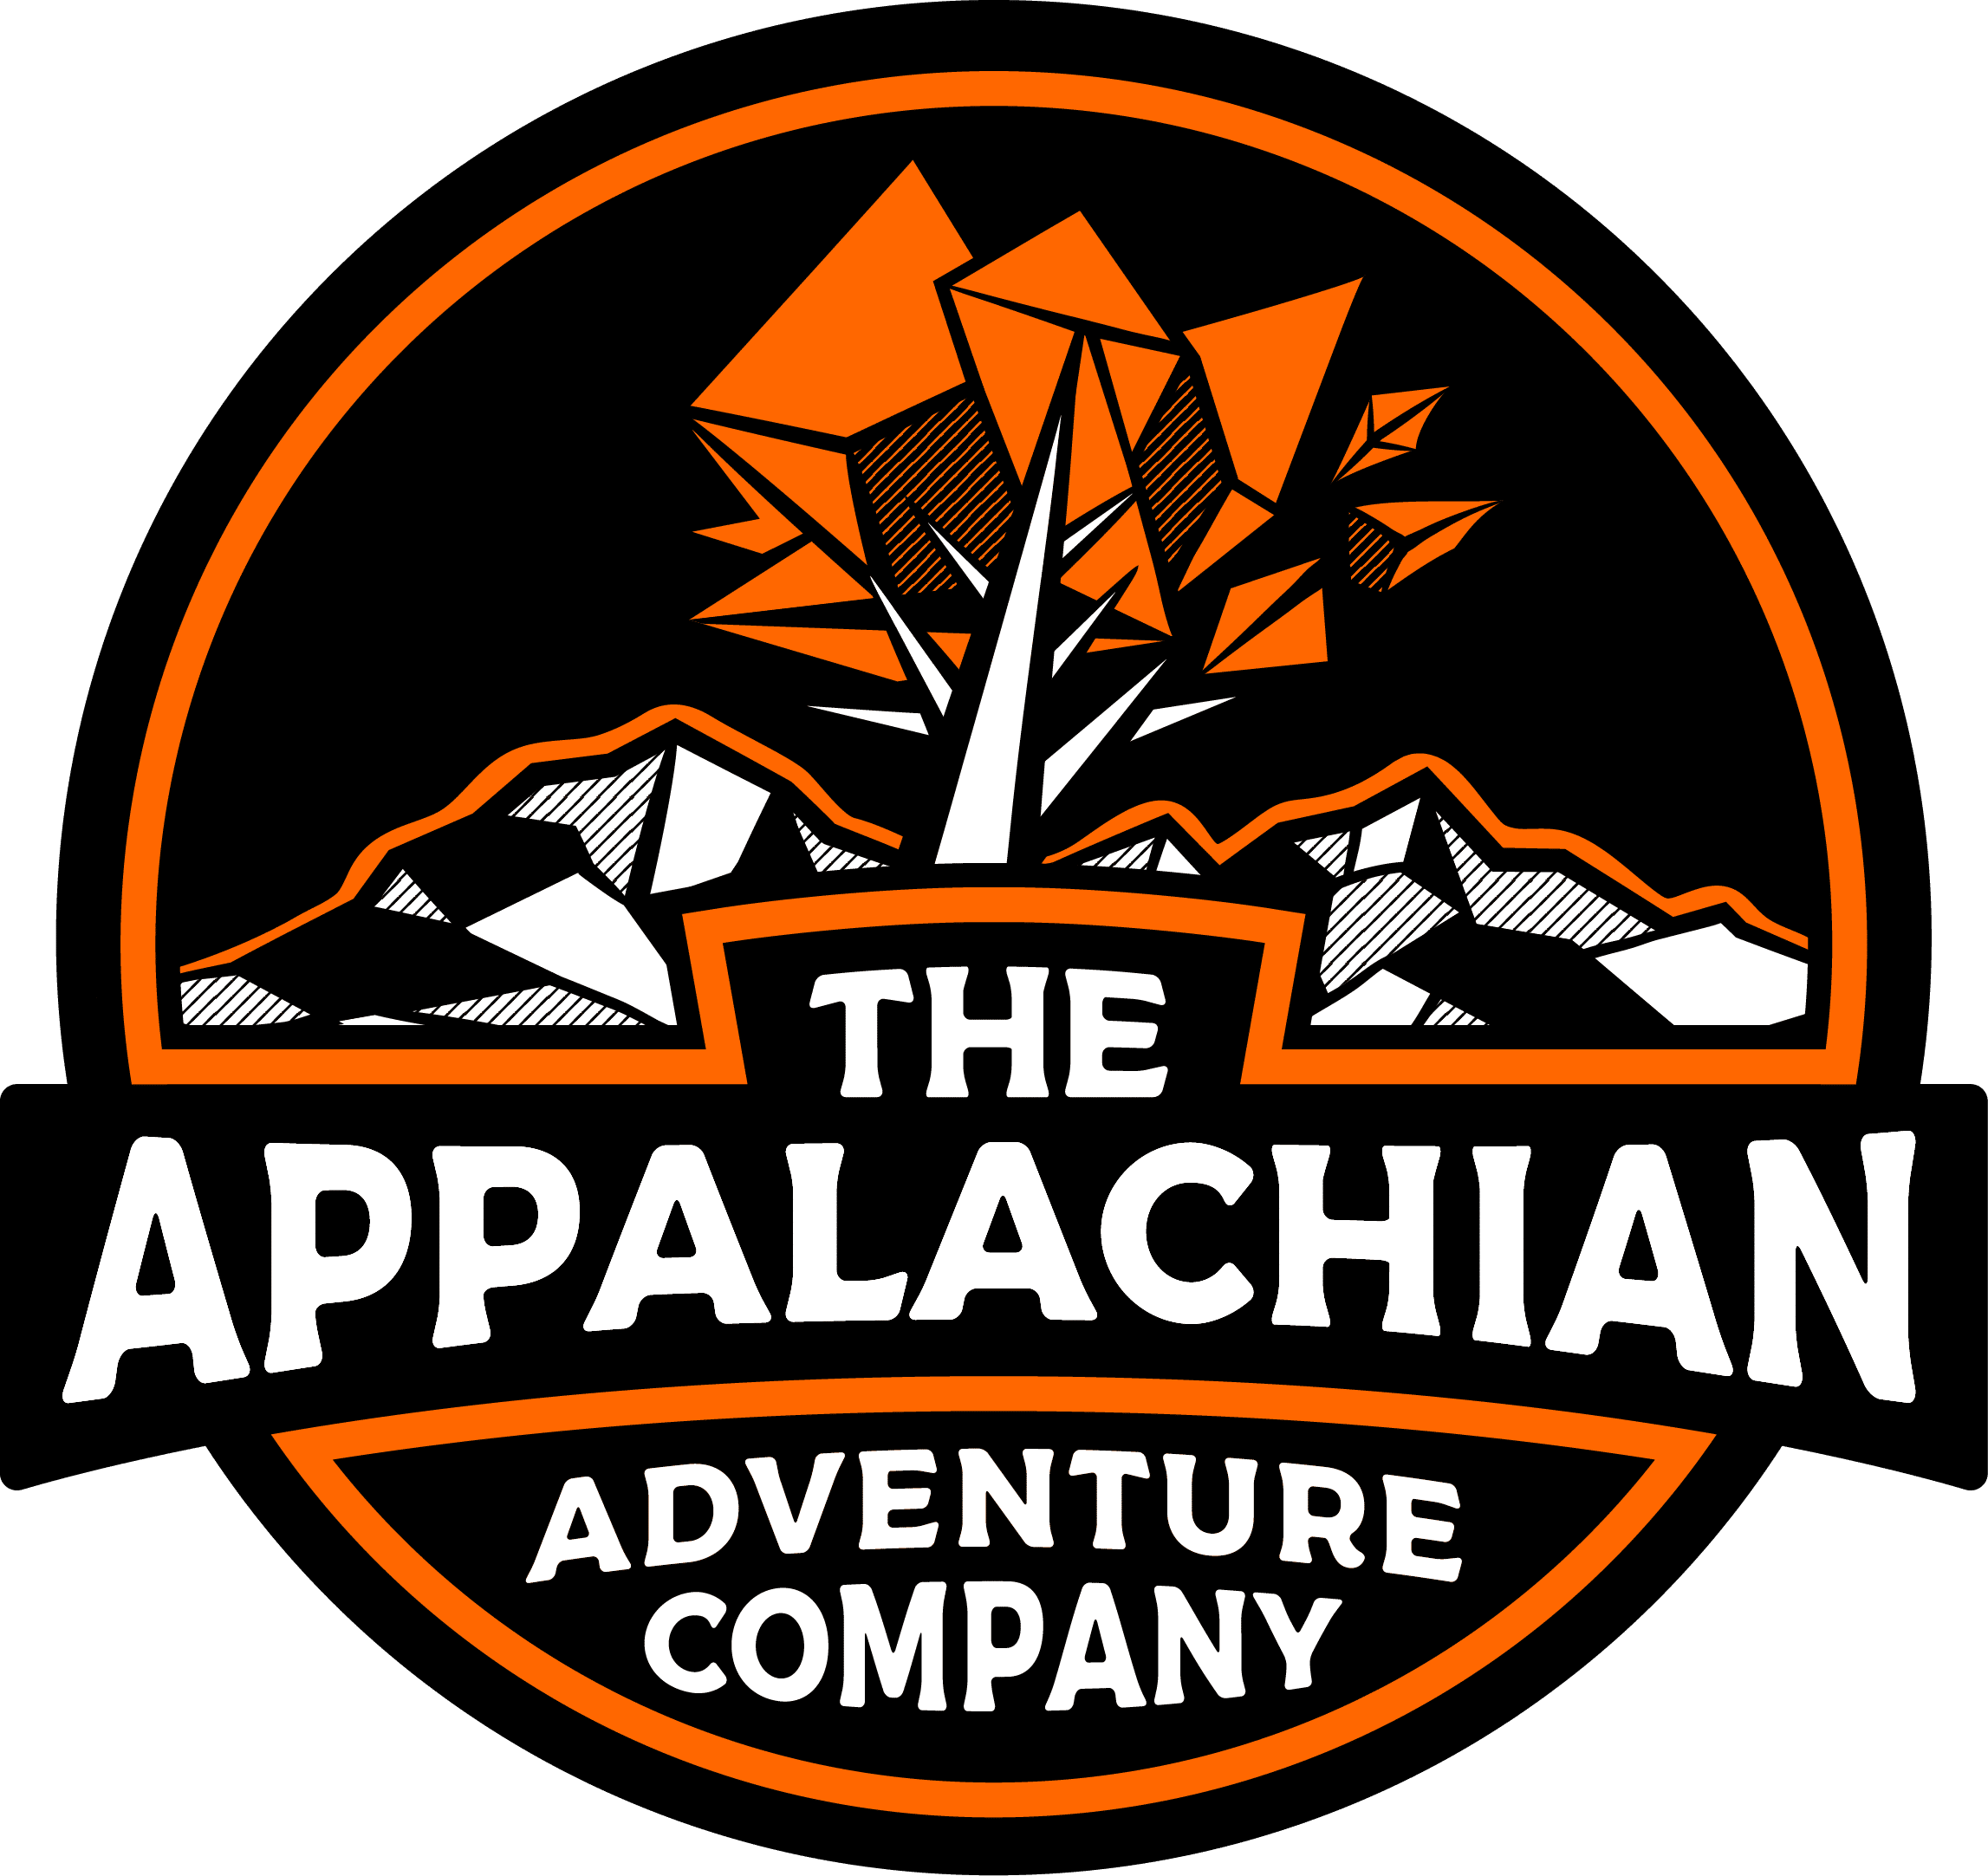 The Appalachian Adventure Company